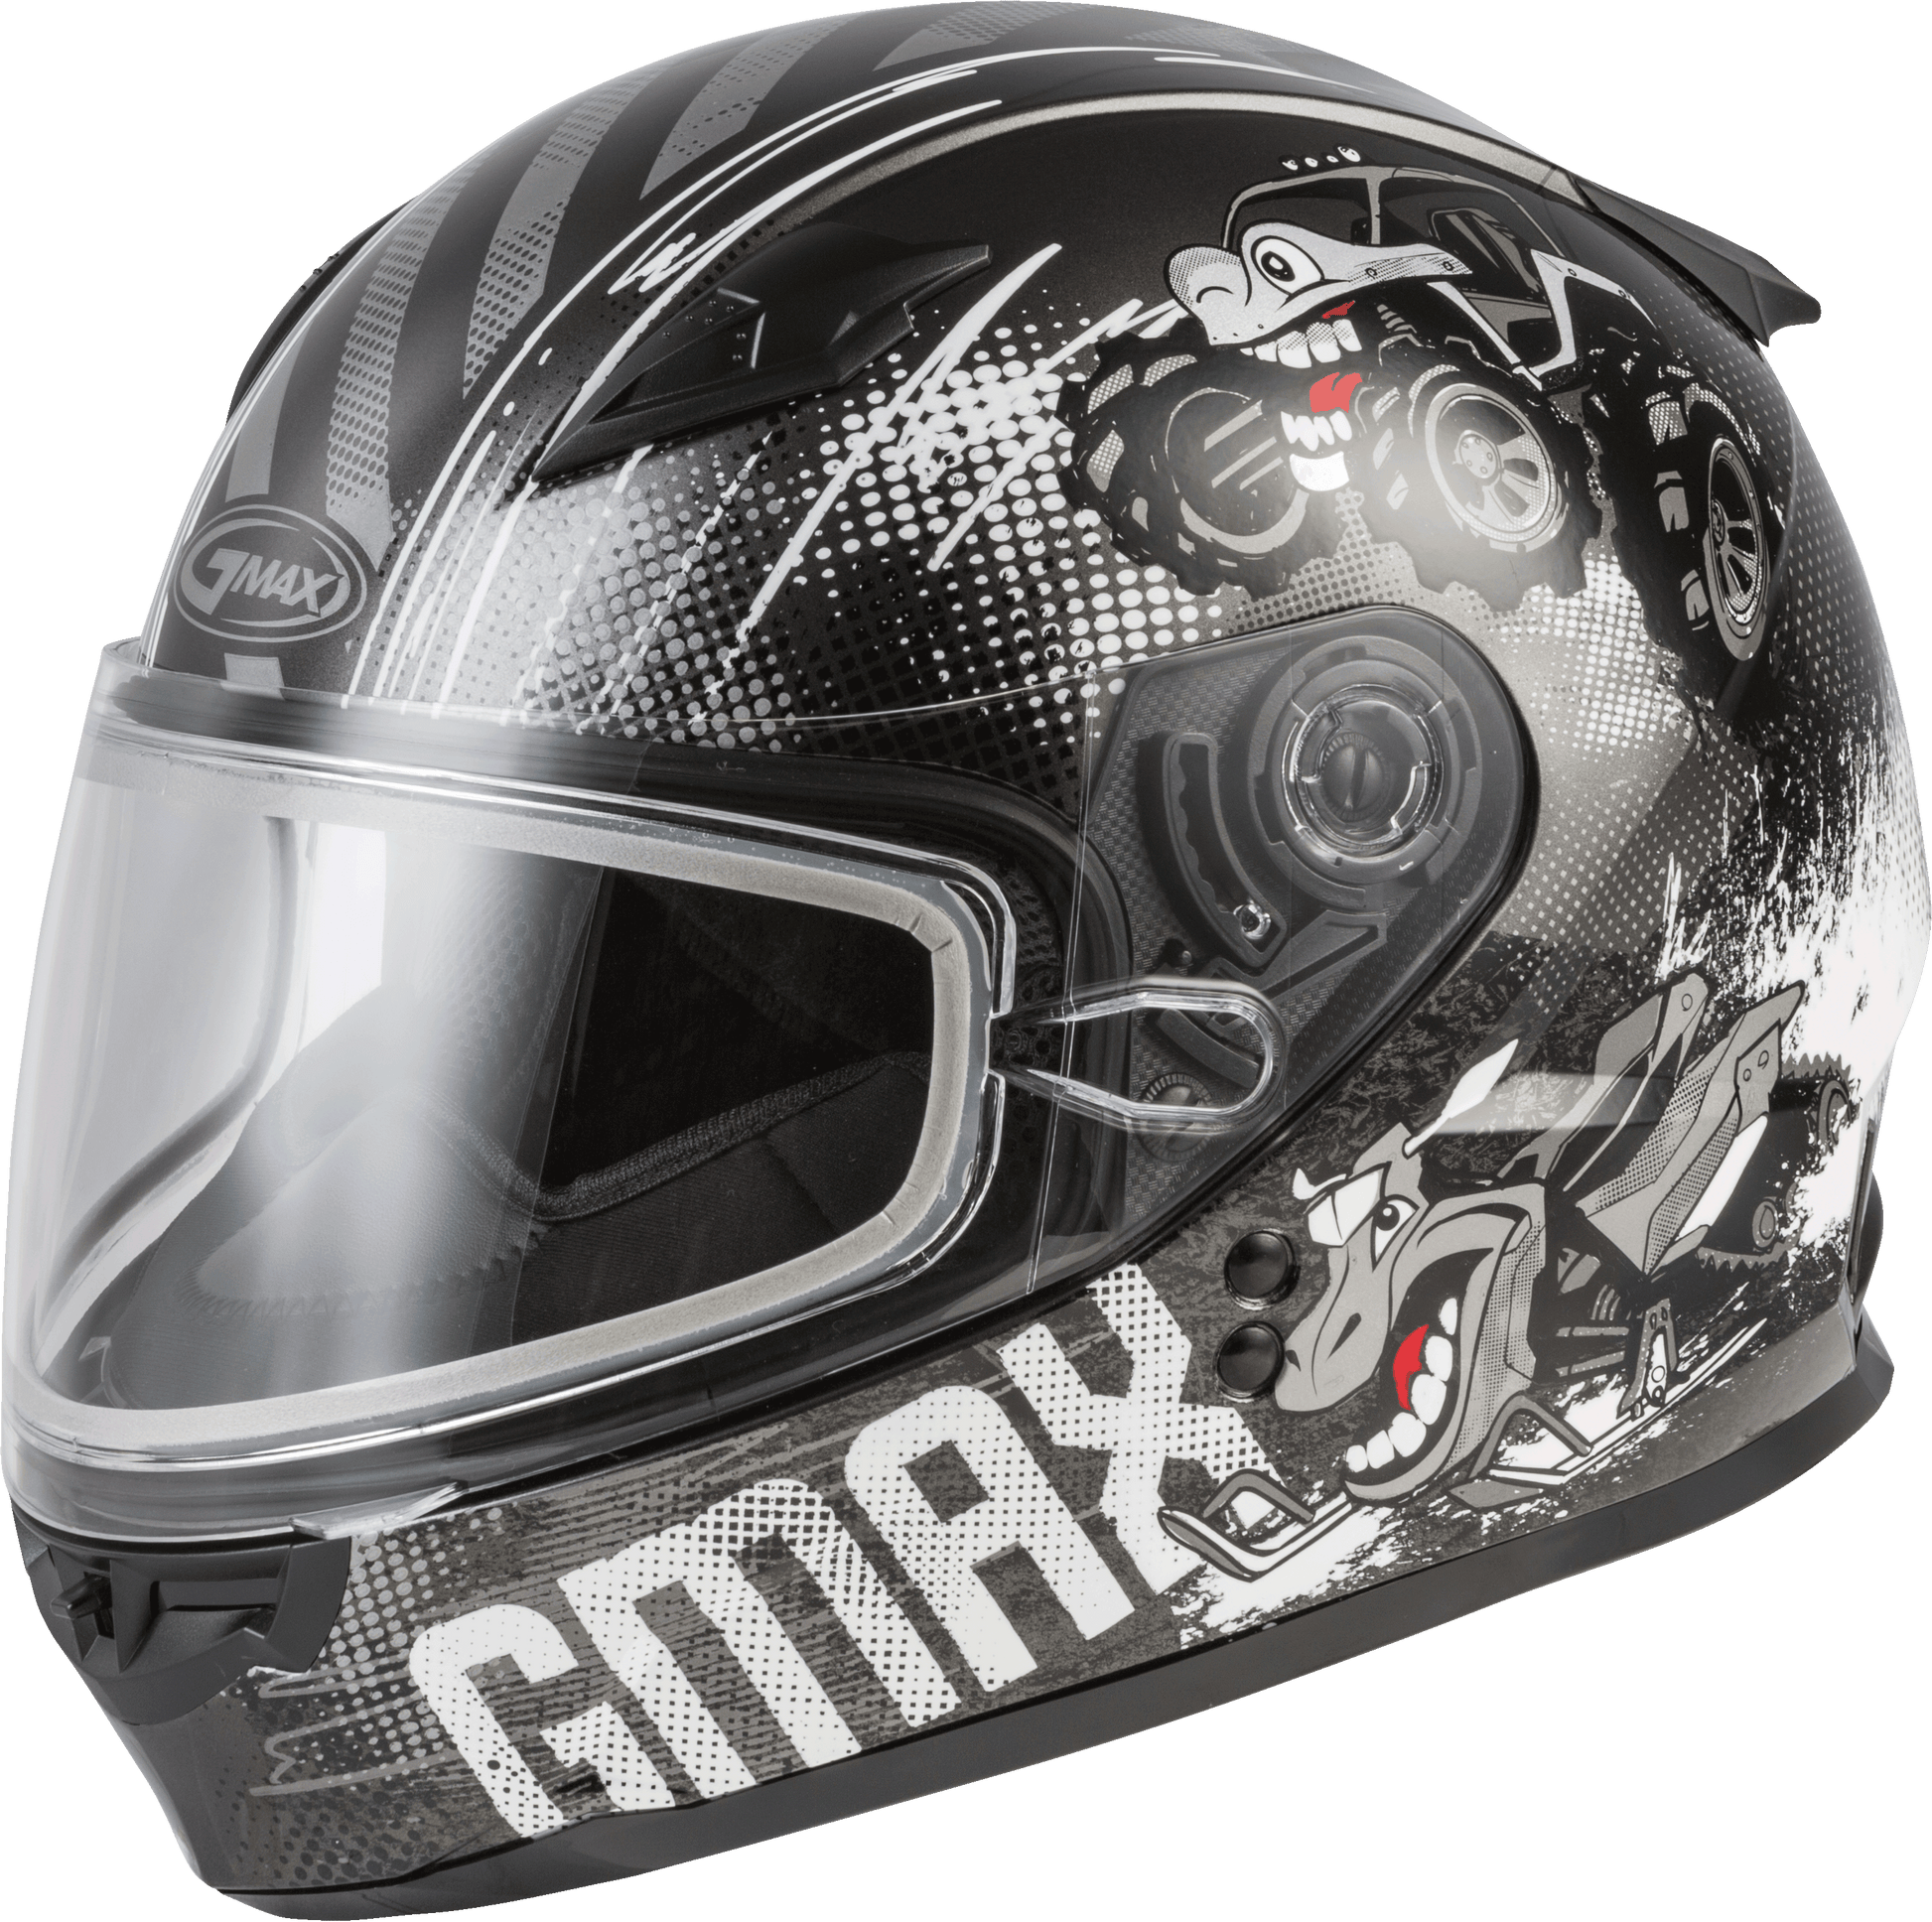 Gmax 72-6033 Youth GM-49Y 'Beasts' Snow Helmet Dark Silver/Black